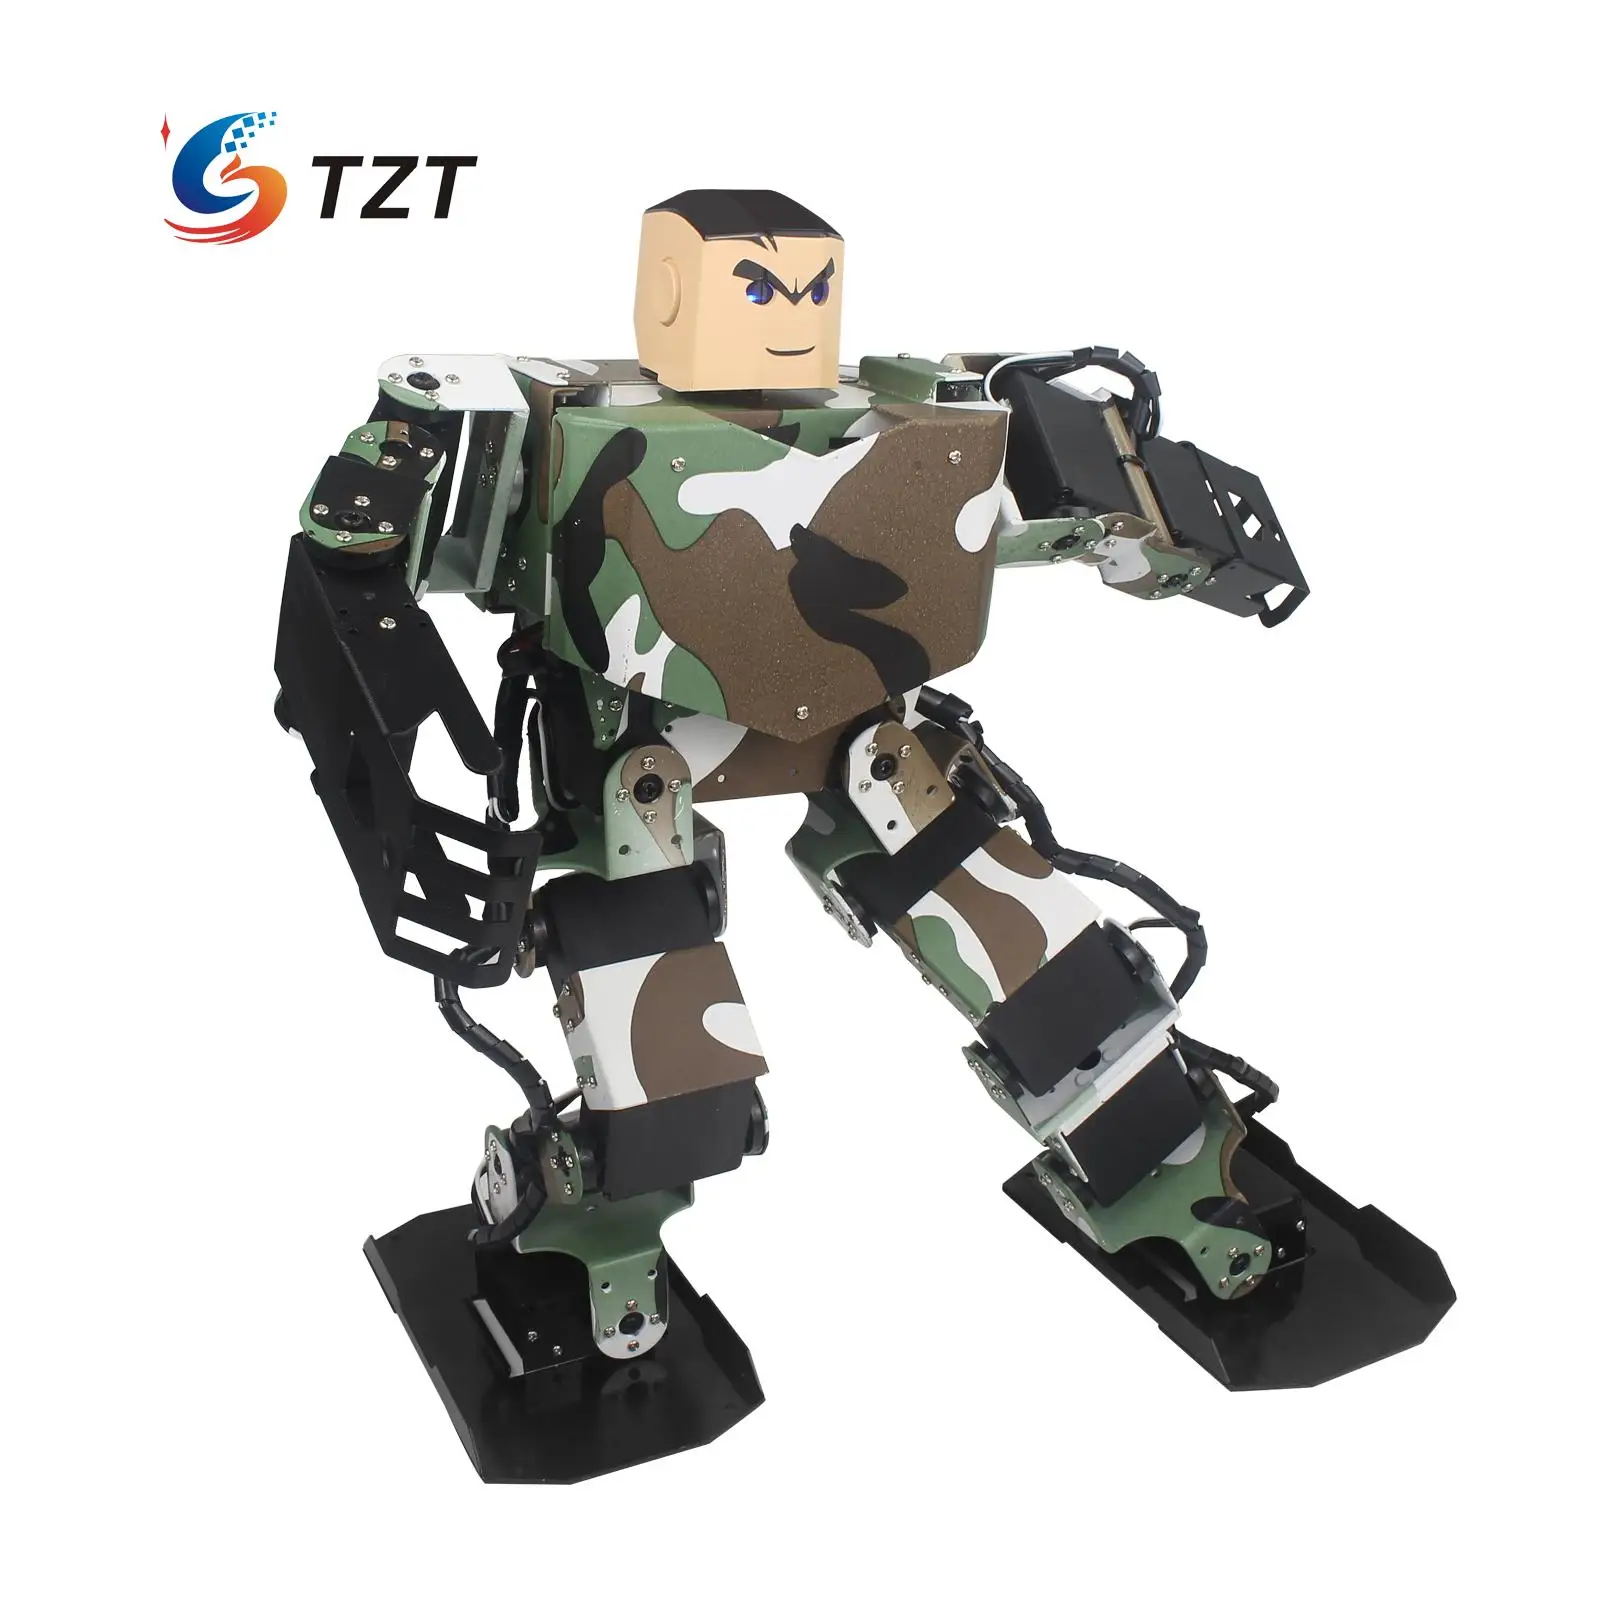 Король солдат 16DOF умный гуманоид робот рамка наборы конкурс танец Biped робототехники для DIY в разобранном виде